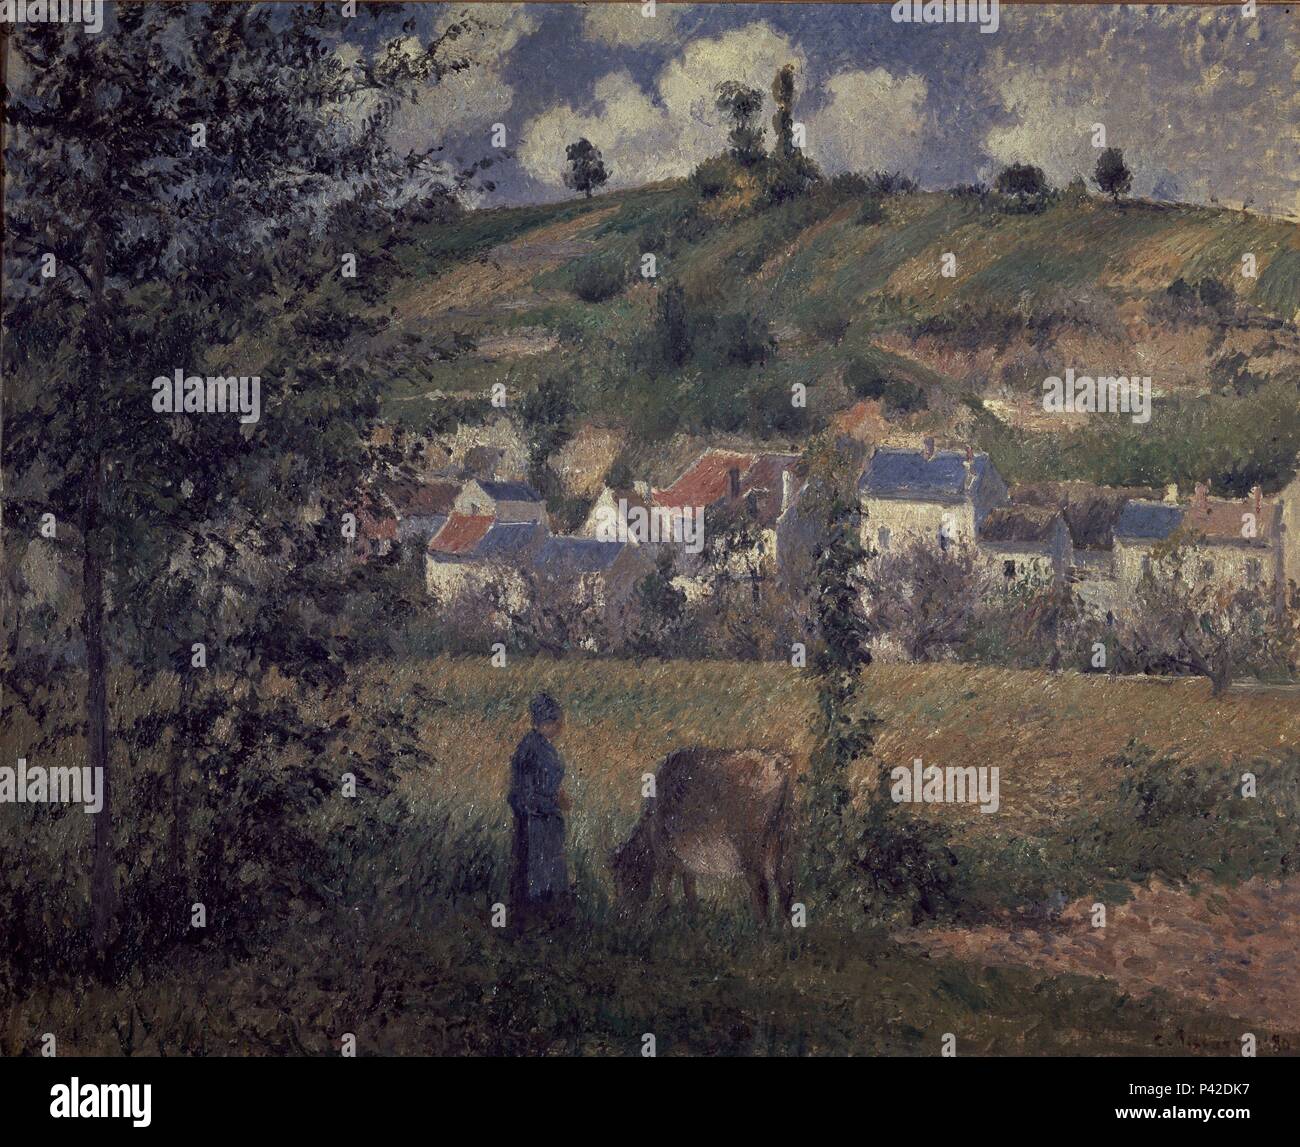 PAISAJE EN ARTS - 1880 - OLEO/LIENZO - 54'5 x 65 cm - IMPRESIONISMO FRANCES. Auteur : Camille Pissarro (1830-1903). Lieu : MUSÉE D'Orsay, France. Banque D'Images